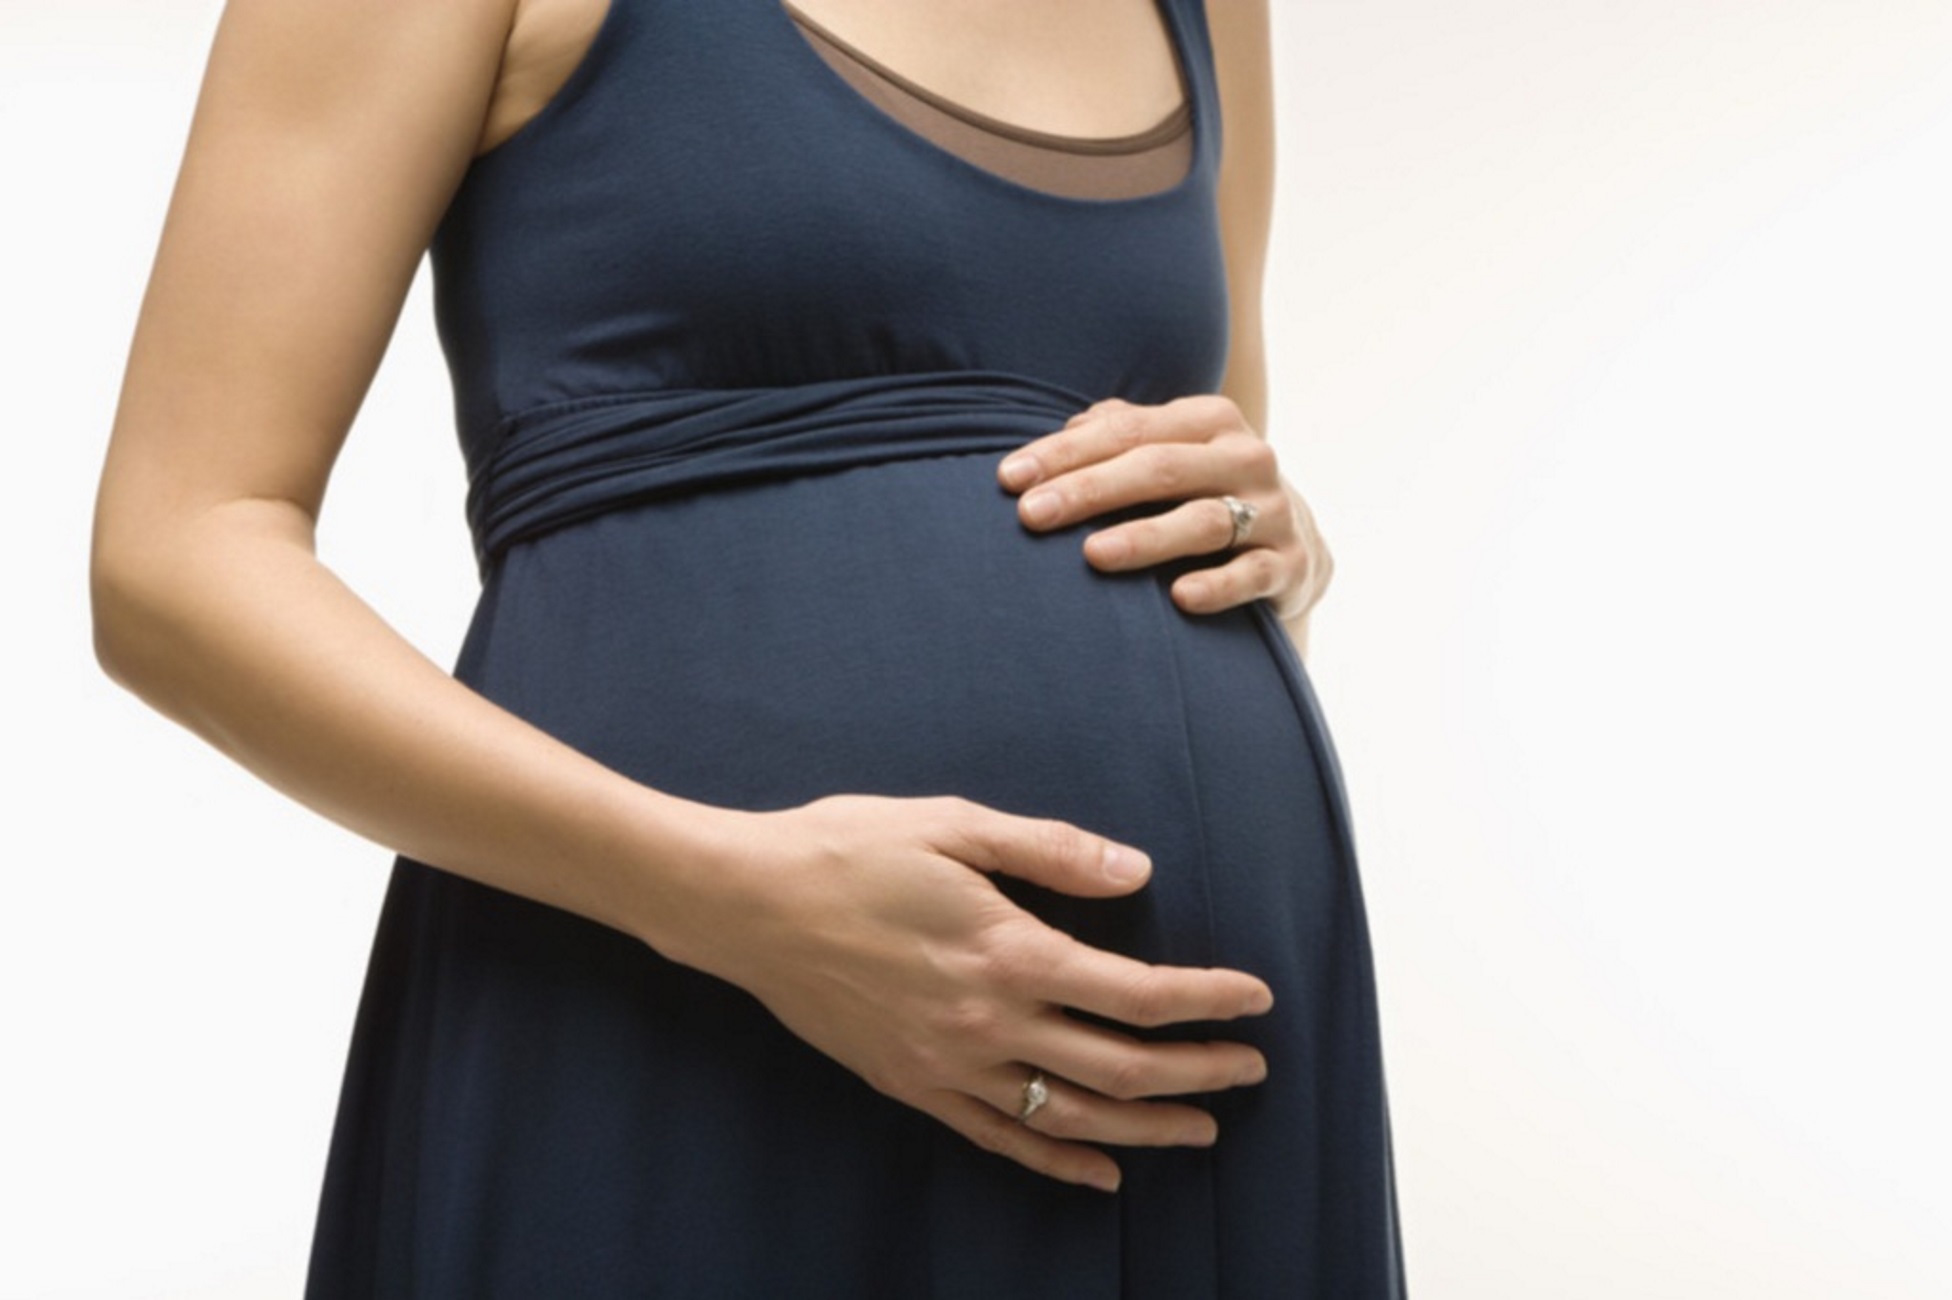 Κάλυμνος: Αεροδιακομιδή εγκύου στο Ηράκλειο! Εσπευσμένα στο ΠΑΓΝΗ με πρόβλημα υγείας